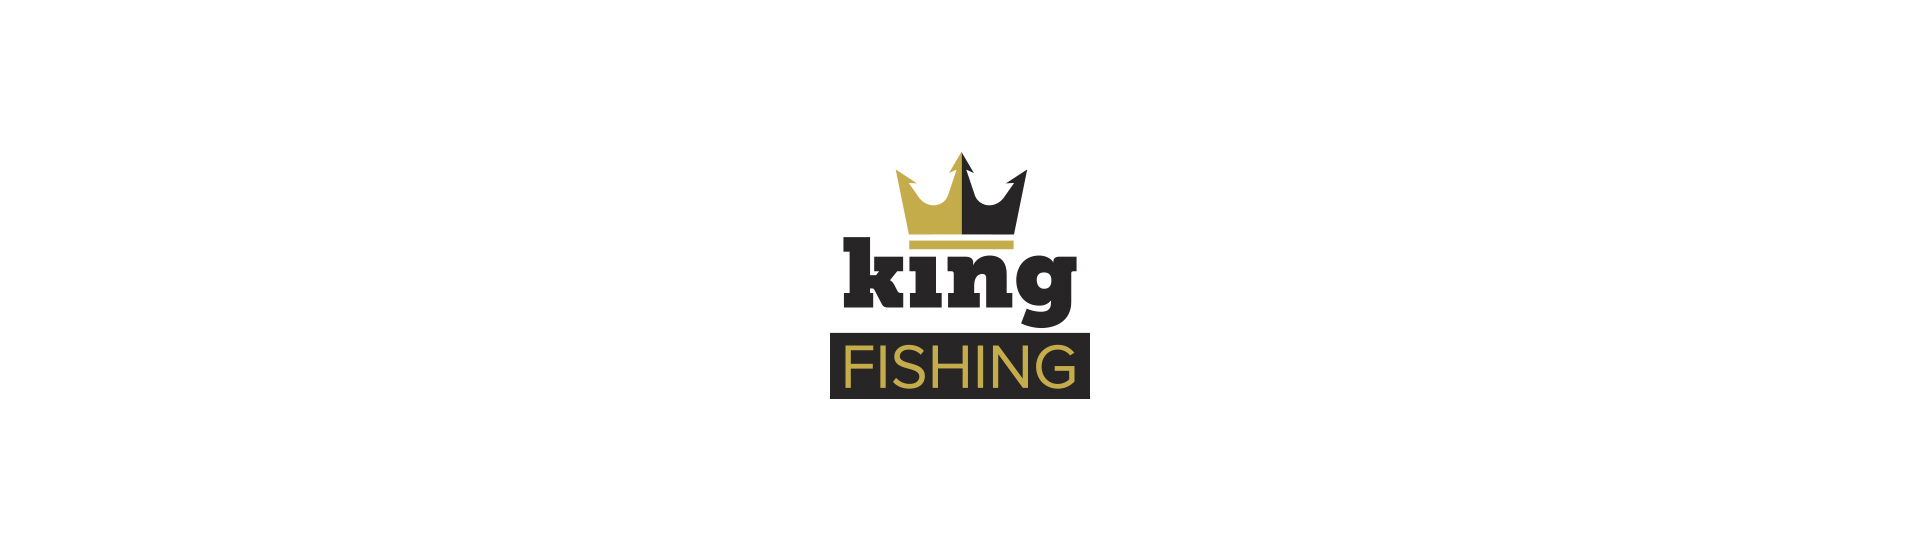 Tvorba loga: King fishing